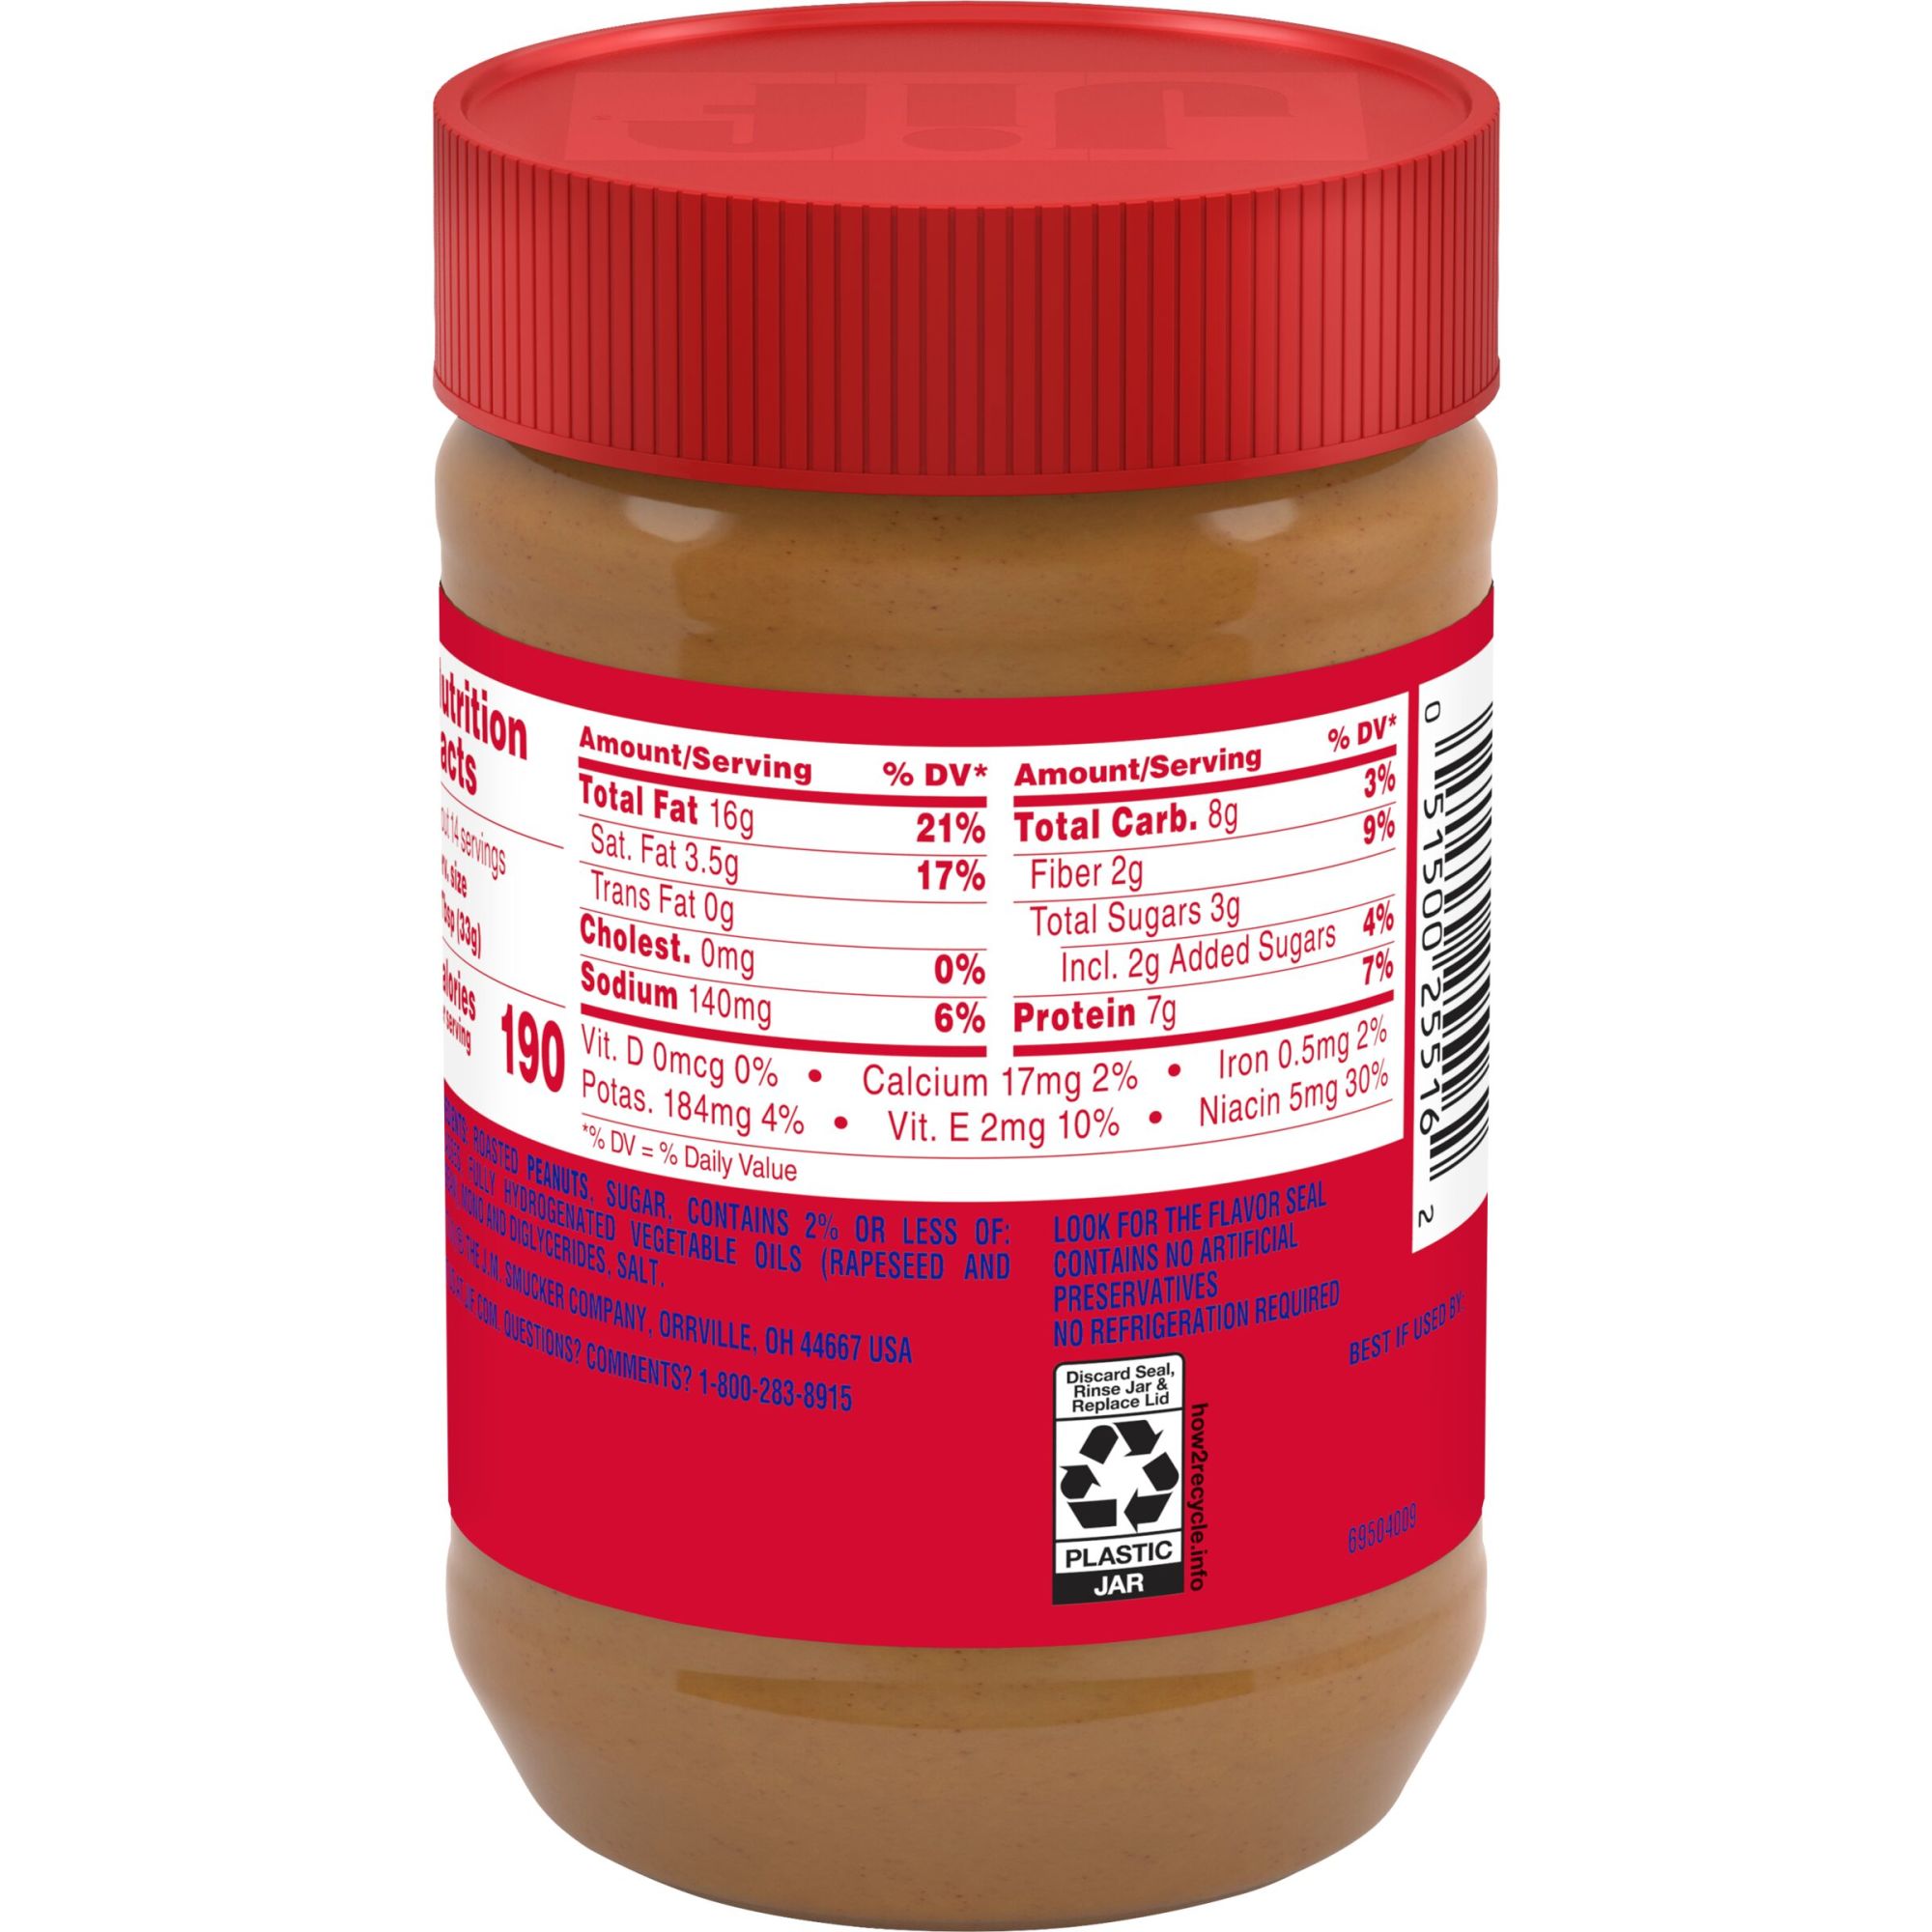 Jif Creamy Peanut Butter, 16-Ounce Jar - image 3 of 8